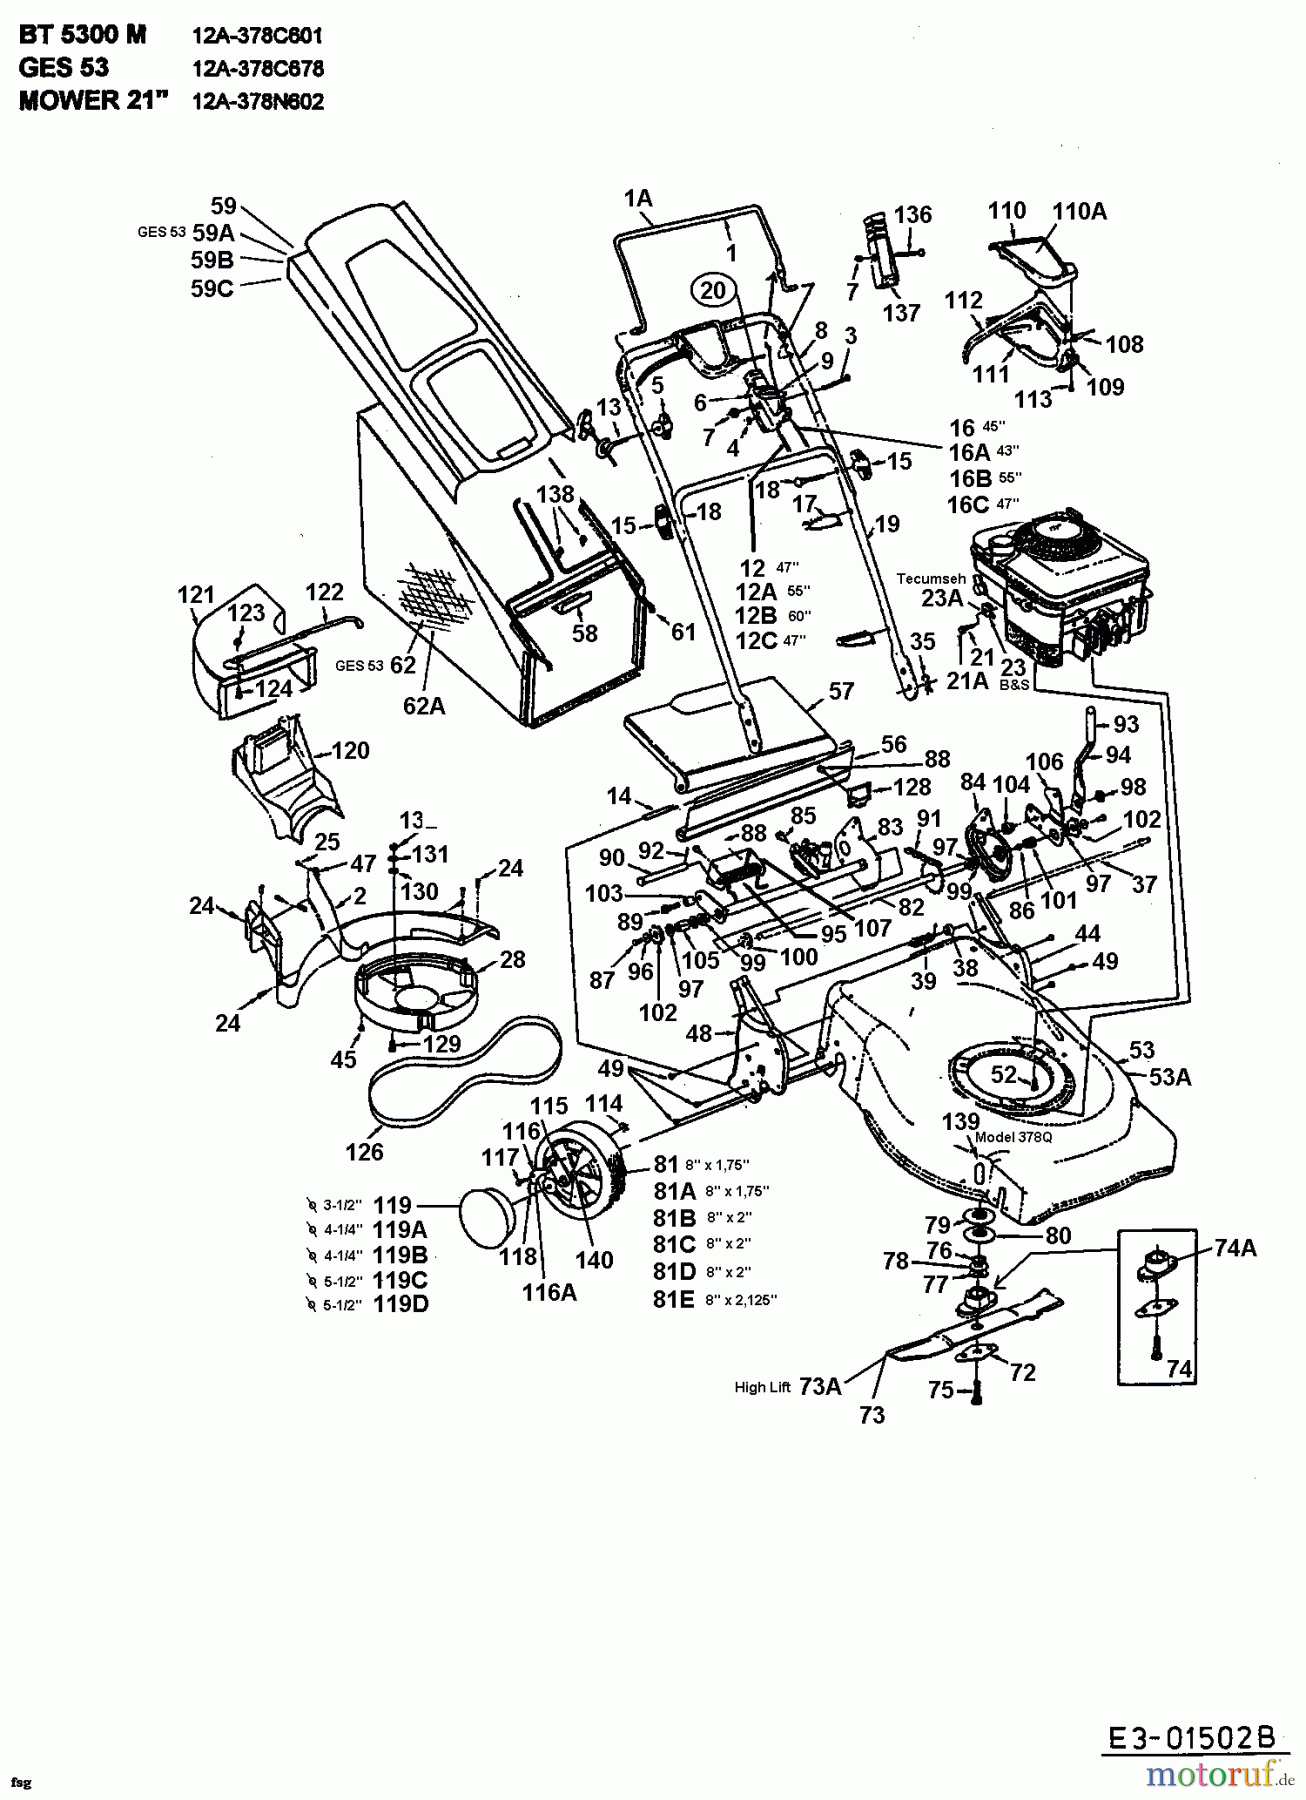  MTD Motormäher mit Antrieb GES 53 12A-378C678  (1999) Grundgerät